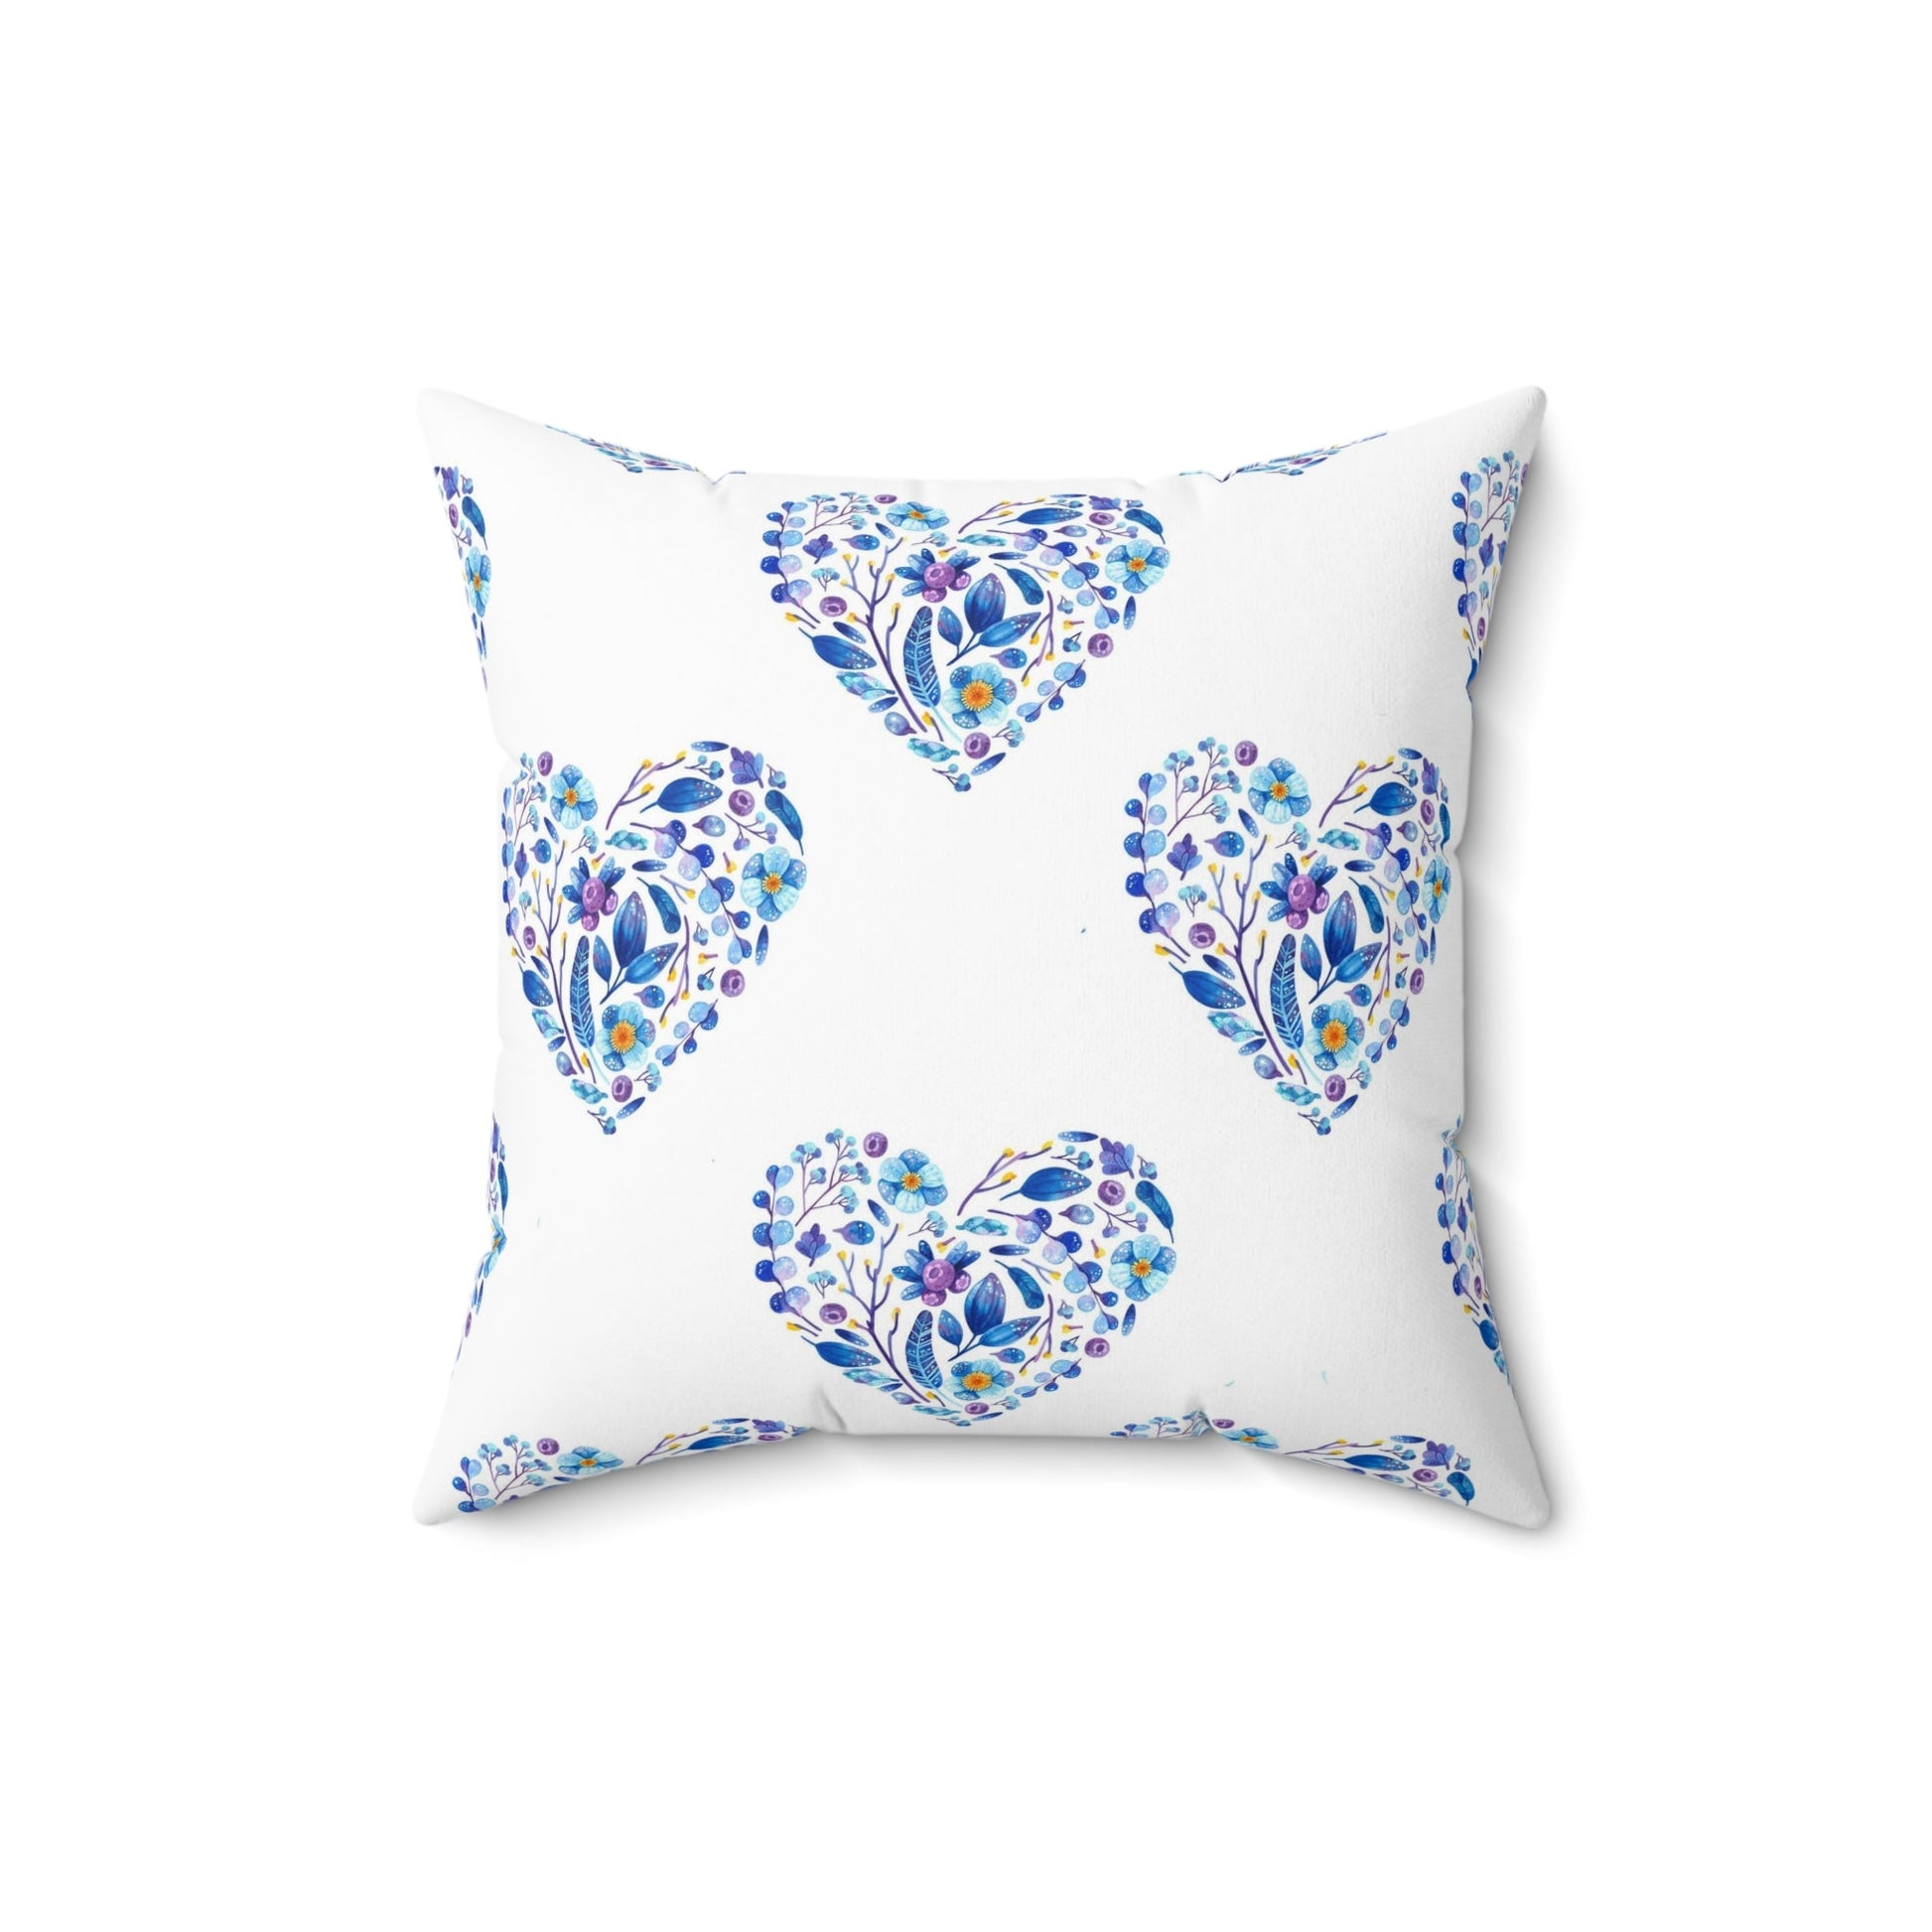 Boho Hearts Garden Pillow, Bright colors, Fresh White Style, Elegant Accent Pillow, Living Room, Bedroom Decor, Girls Bedroom - FlooredByArt